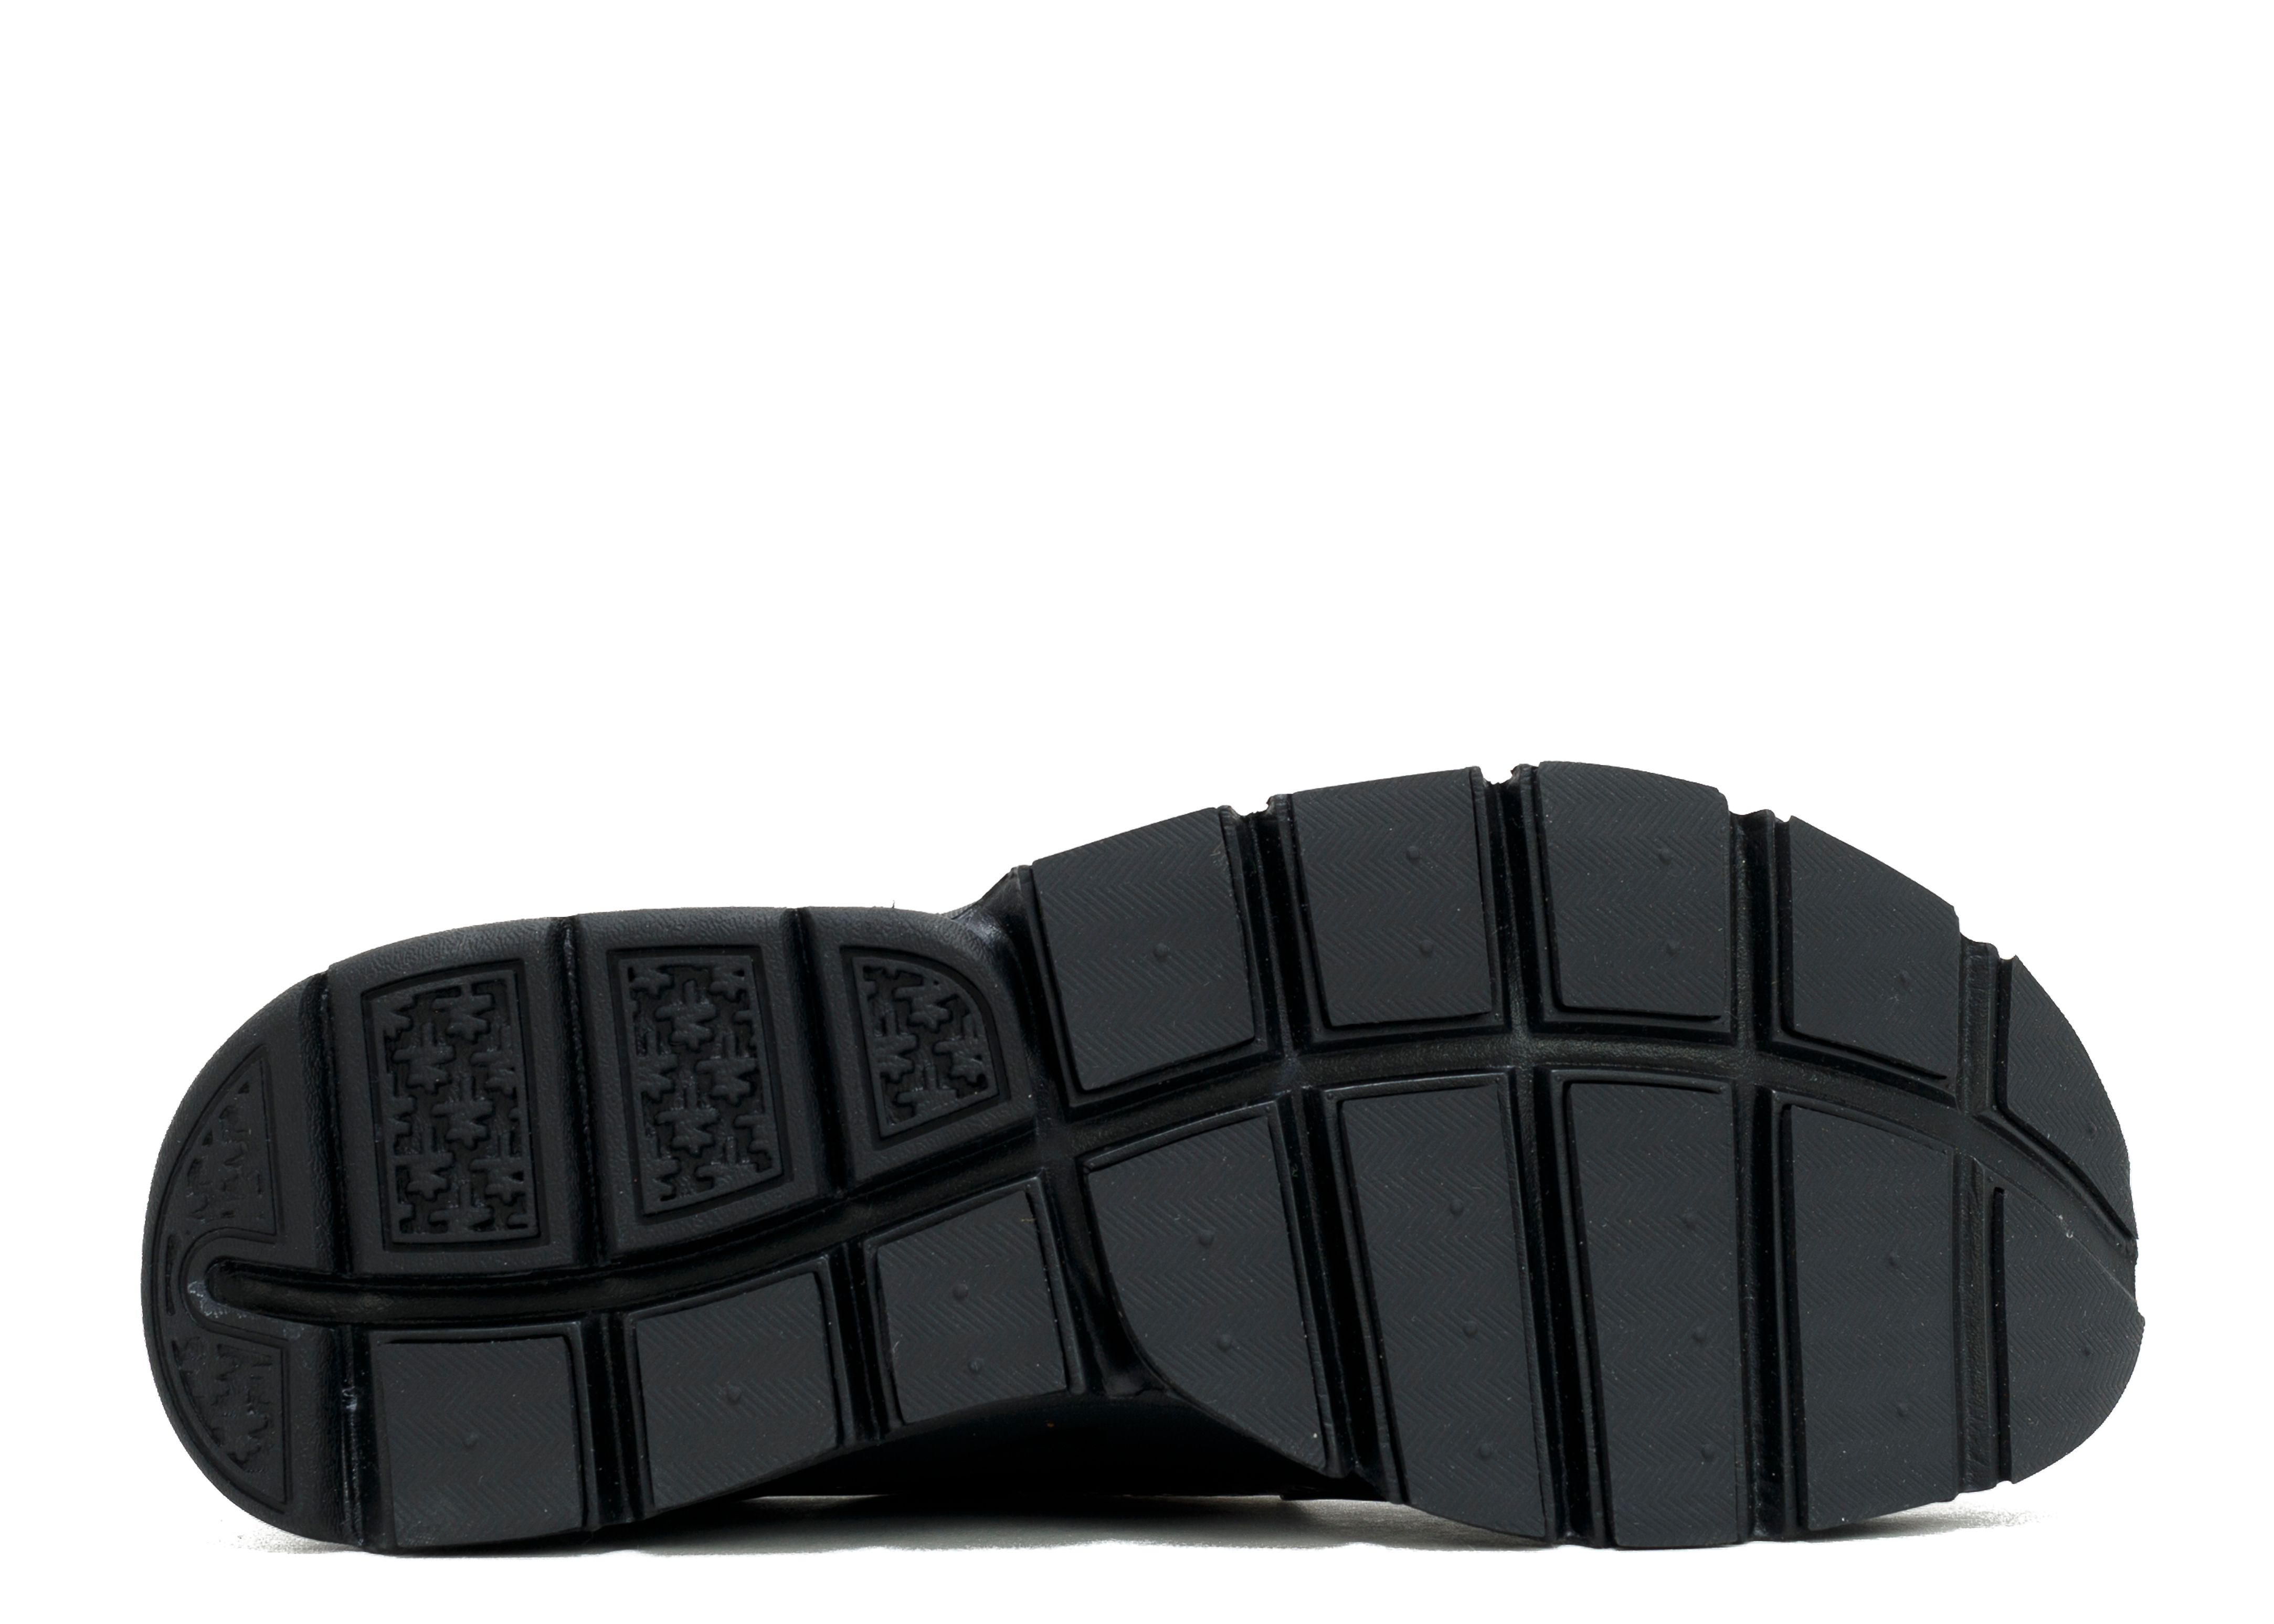 Dart 'Triple Black' - Nike - 819686 001 - black/black-volt | Flight